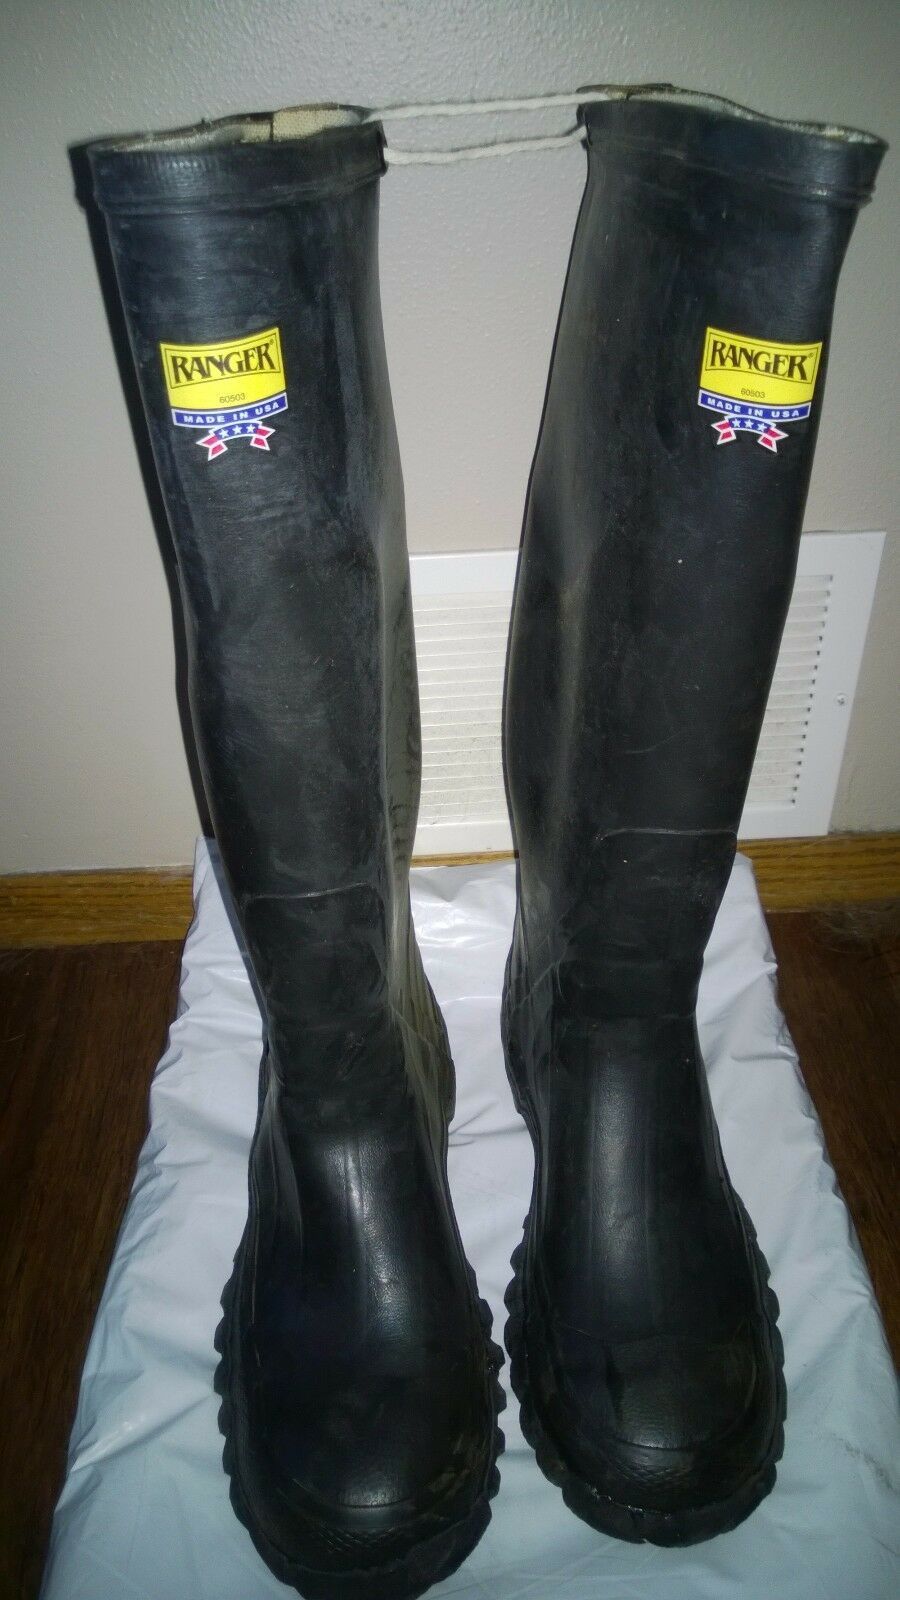 Ranger Black Rubber Boots Size 6 Men's Boots